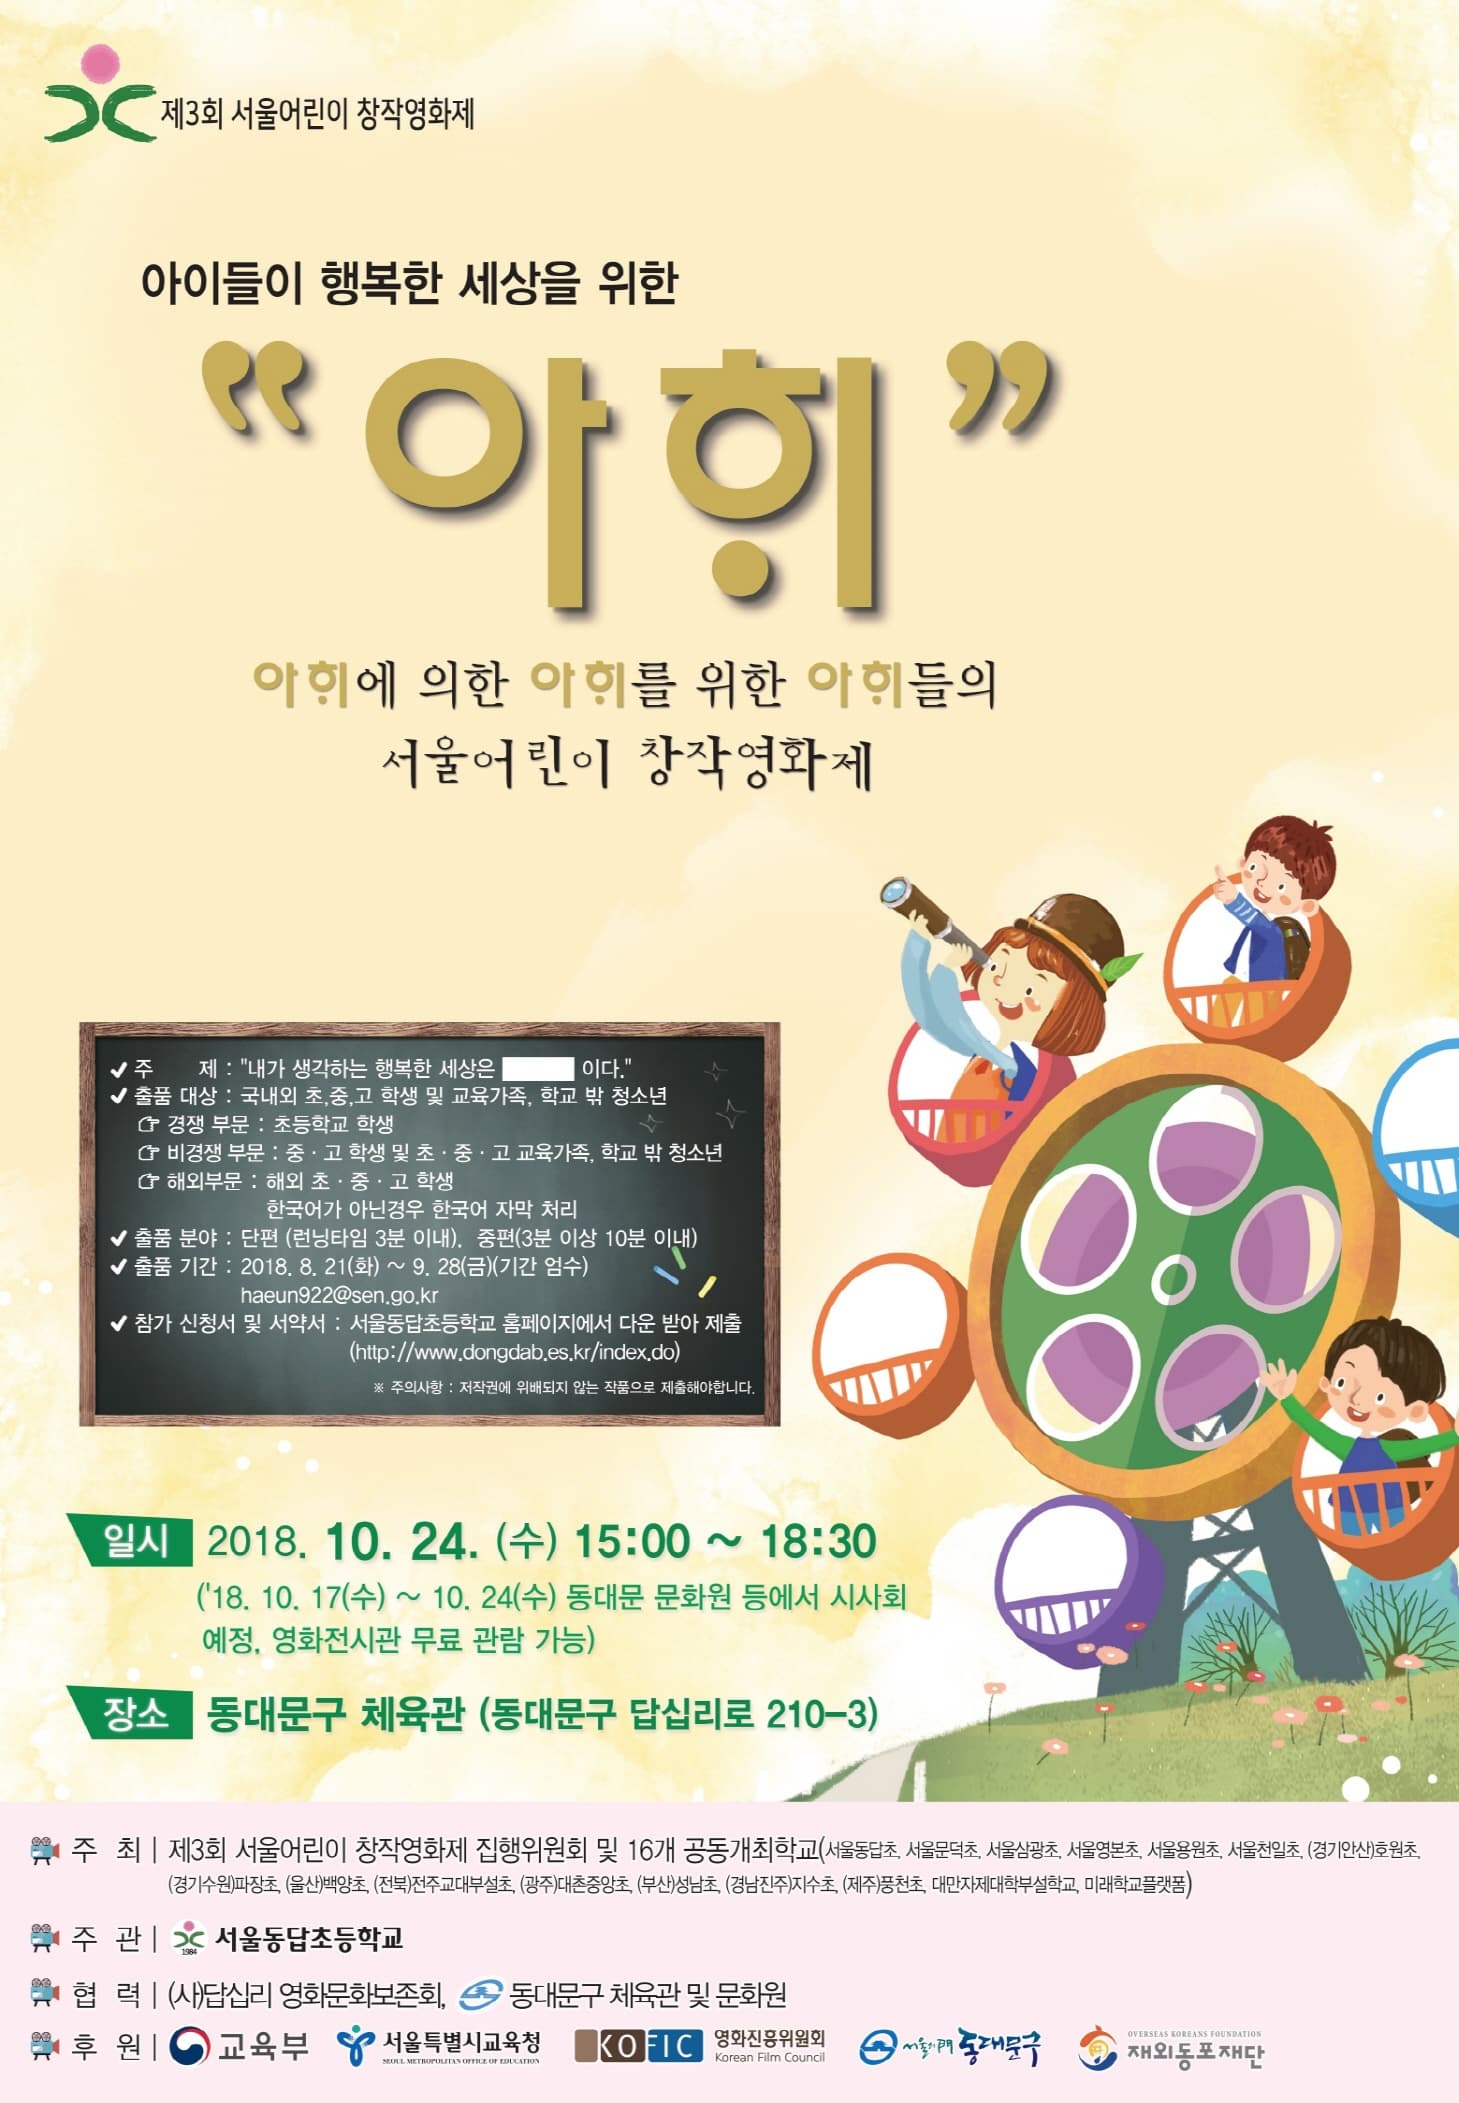 제3회 서울어린이 창작영화제 본문 내용 참조